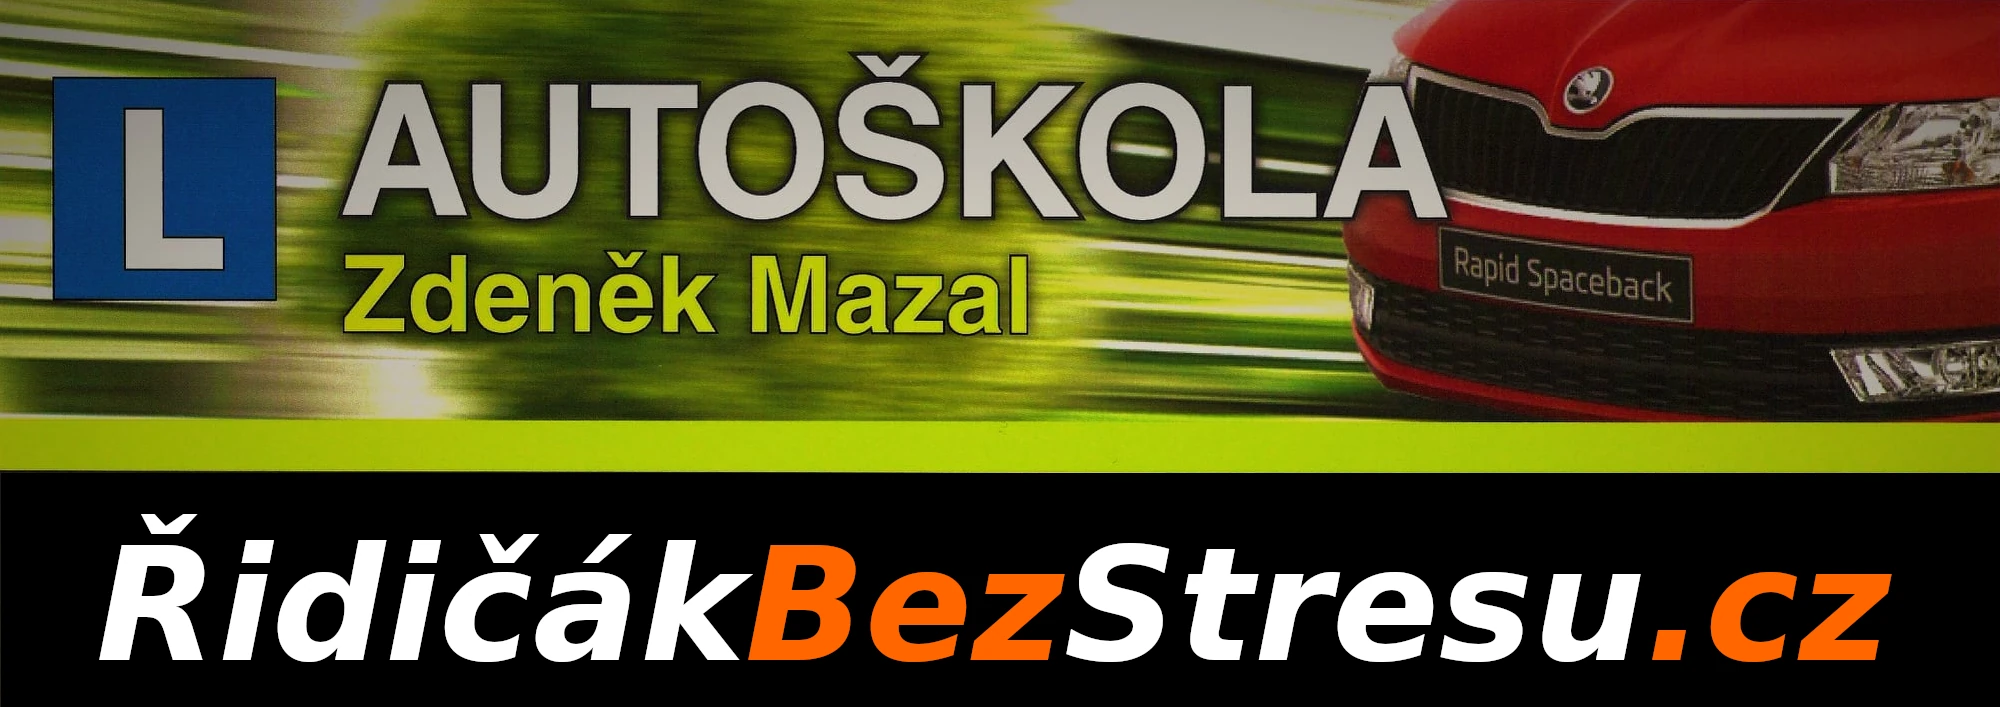 AUTOŠKOLA Zdeněk Mazal - ridicakbezstresu.cz